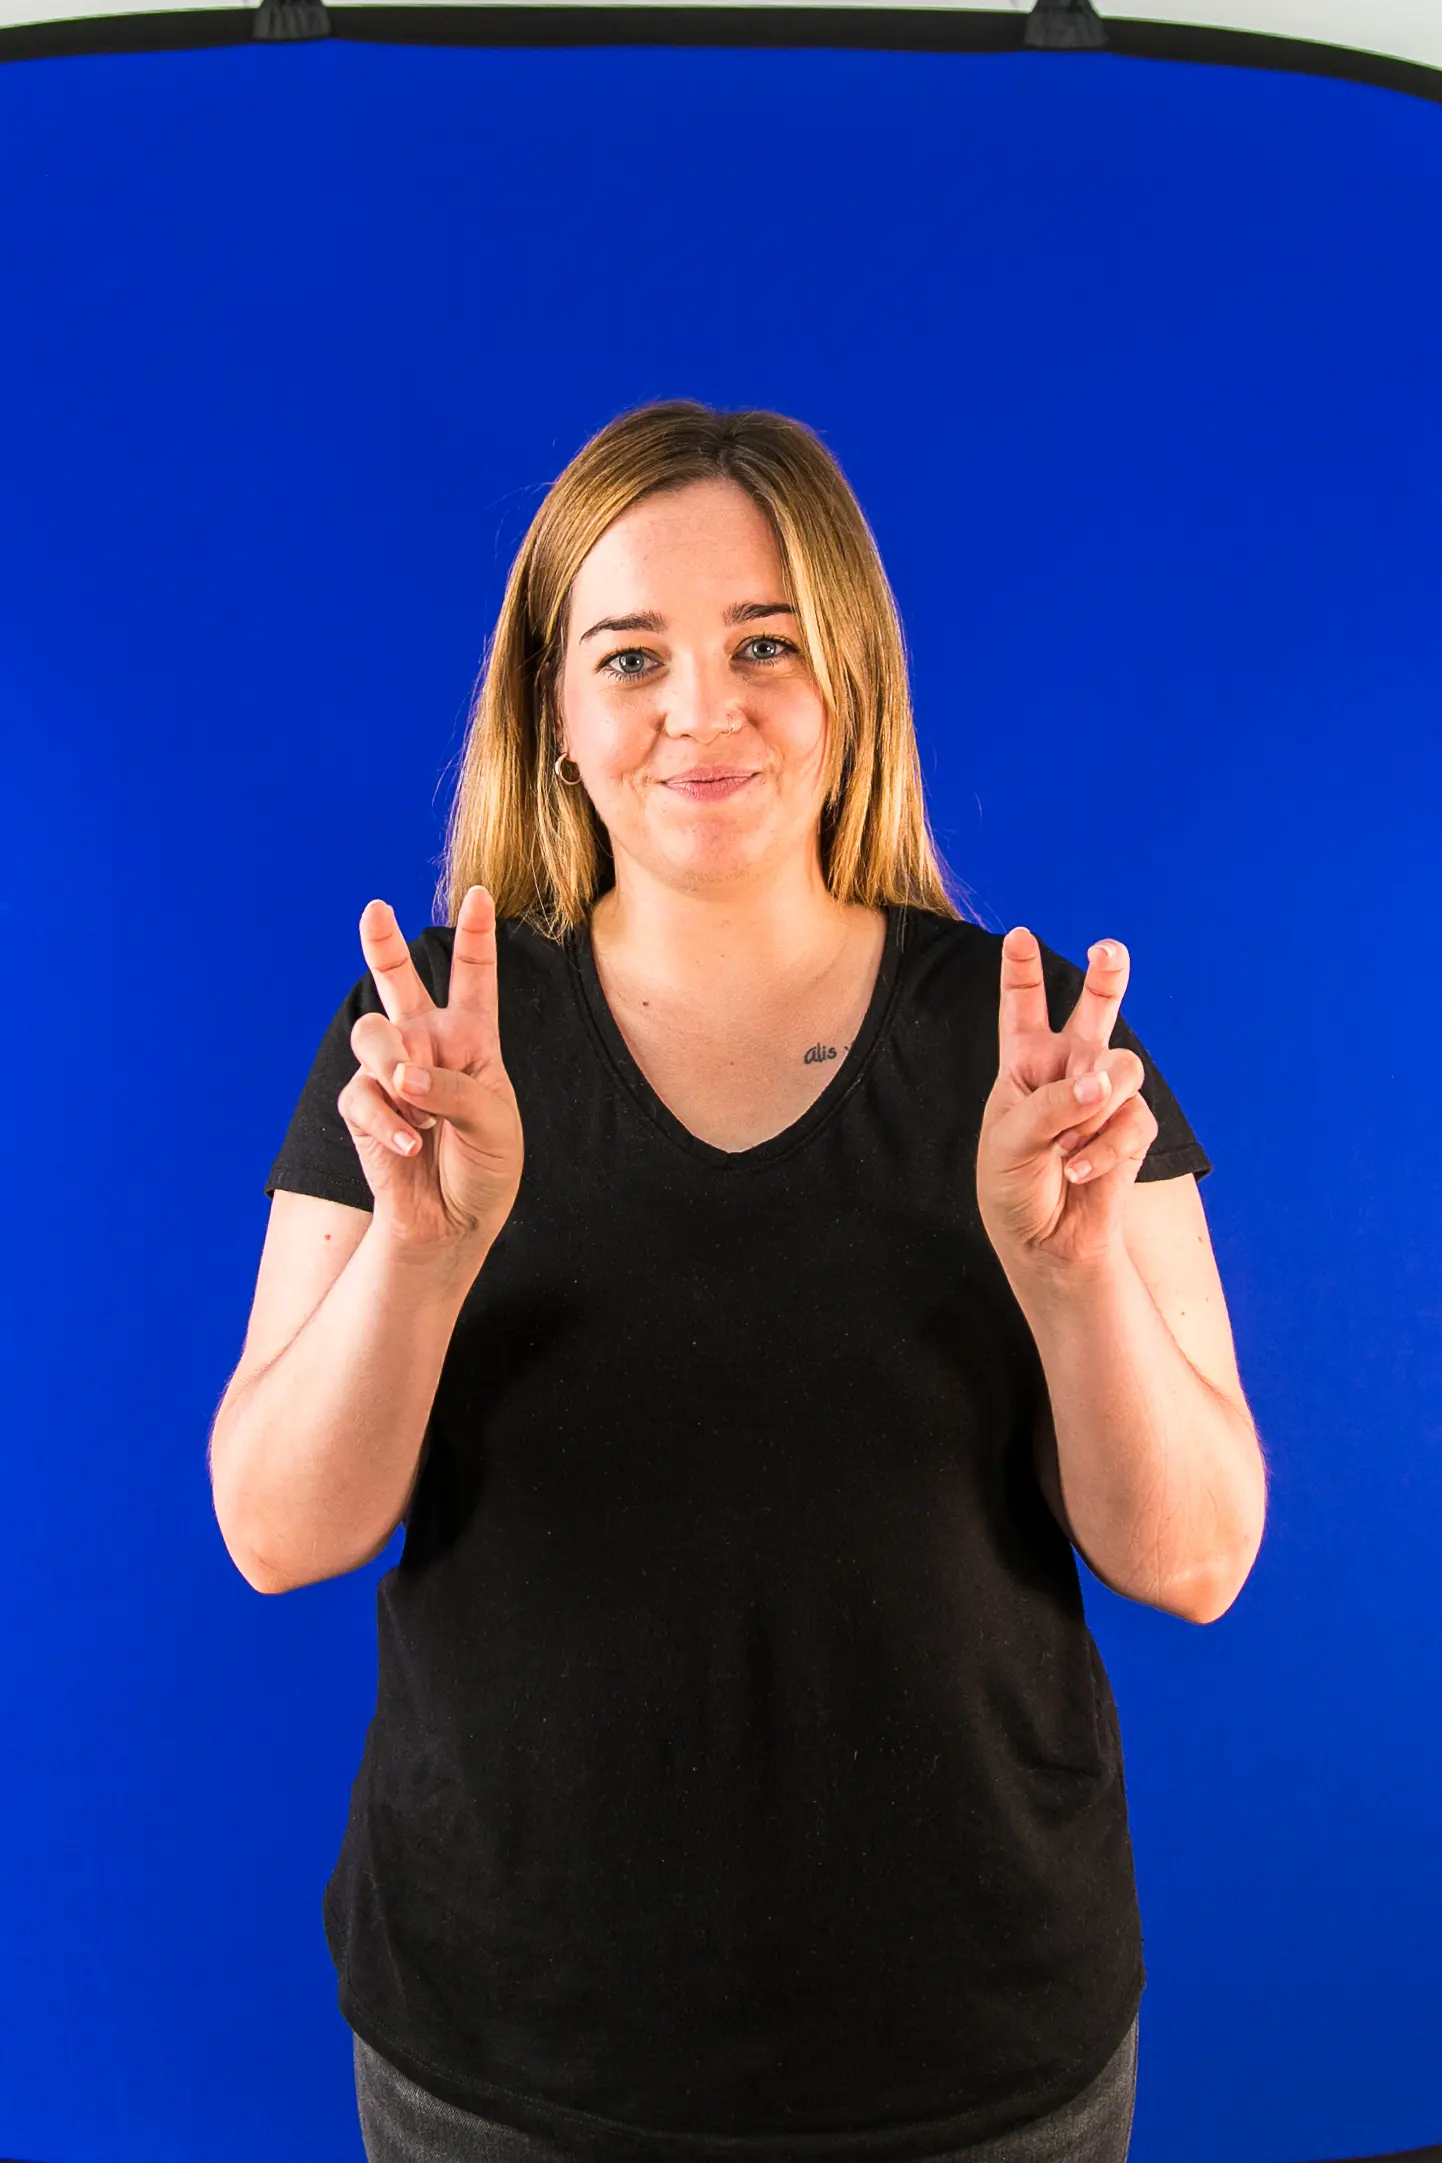 La Cynthia fa el signe TEMA davant un croma blau, somriu i du posada una samarreta negra